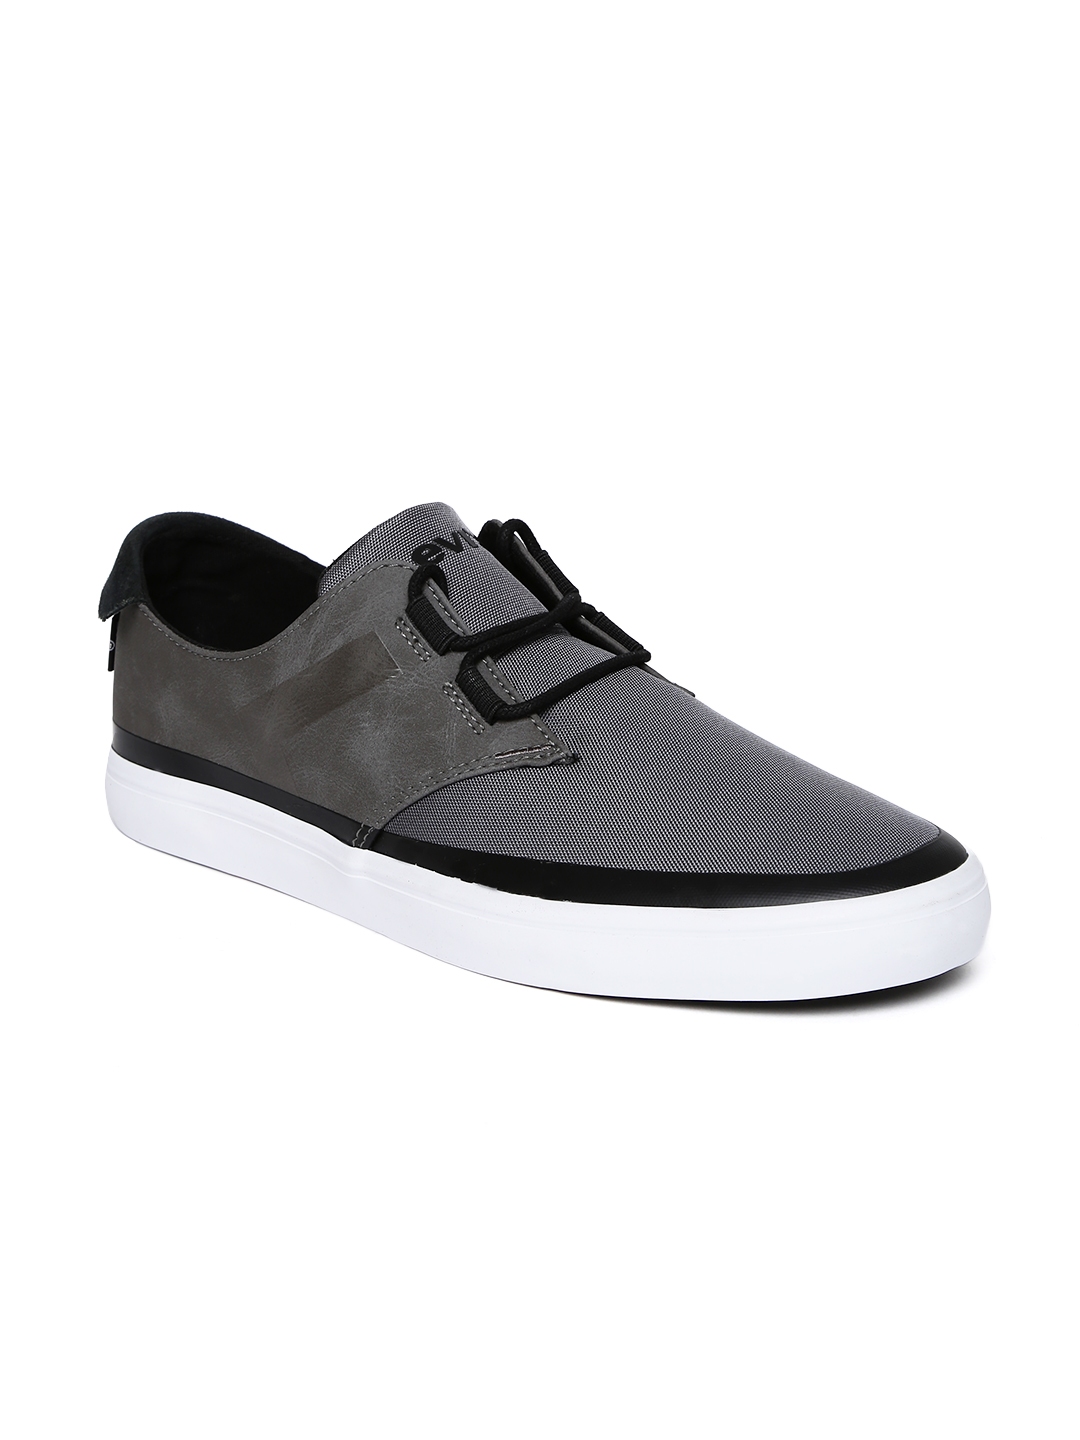 levis shoes grey